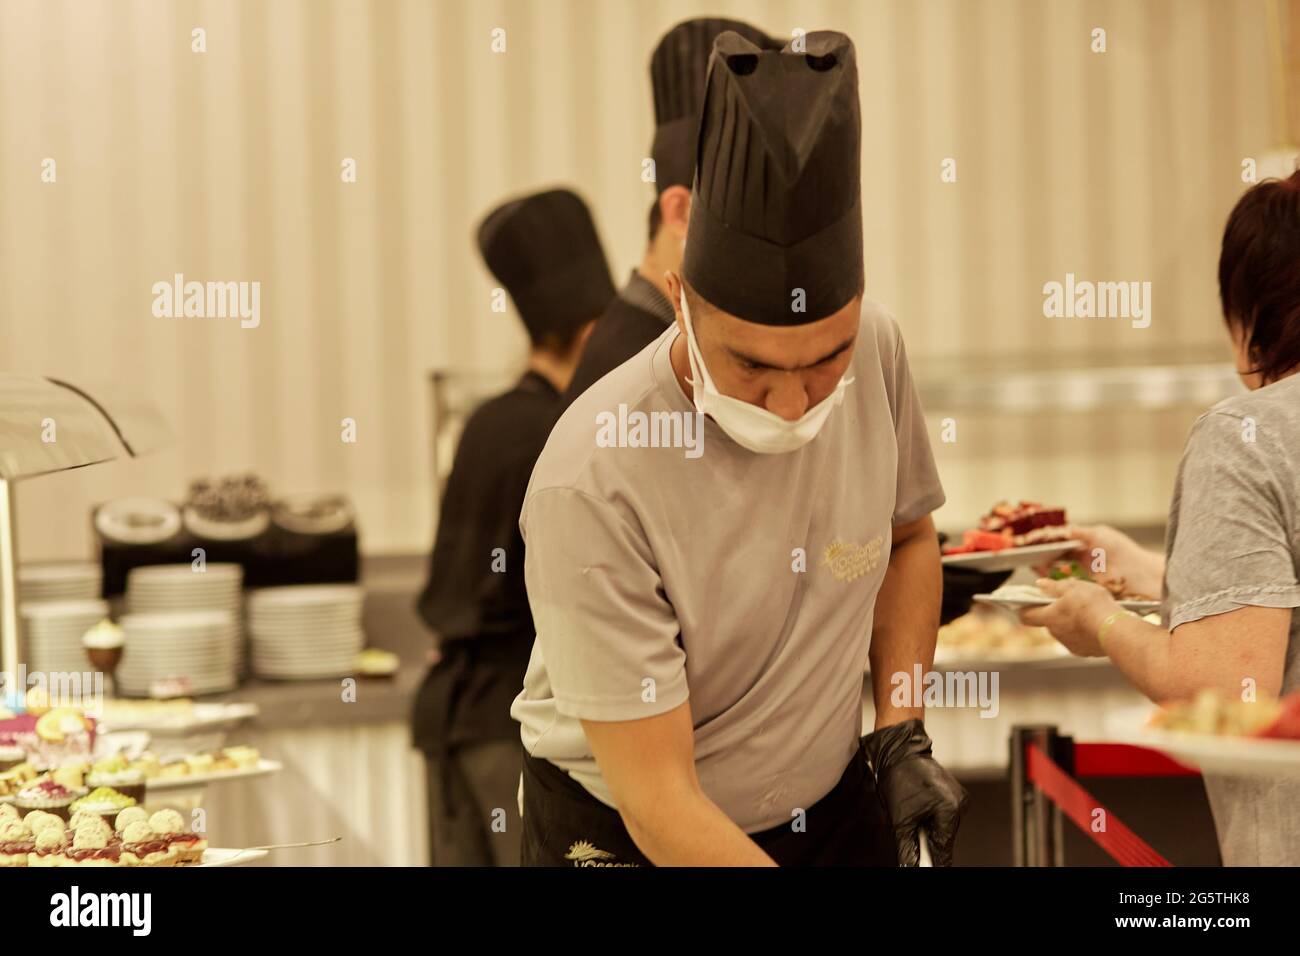 Kemer, Turchia - Maggio, 25: Buffet al ristorante, catering food party: Servizio di persone che raccolgono cibo. Foto Stock